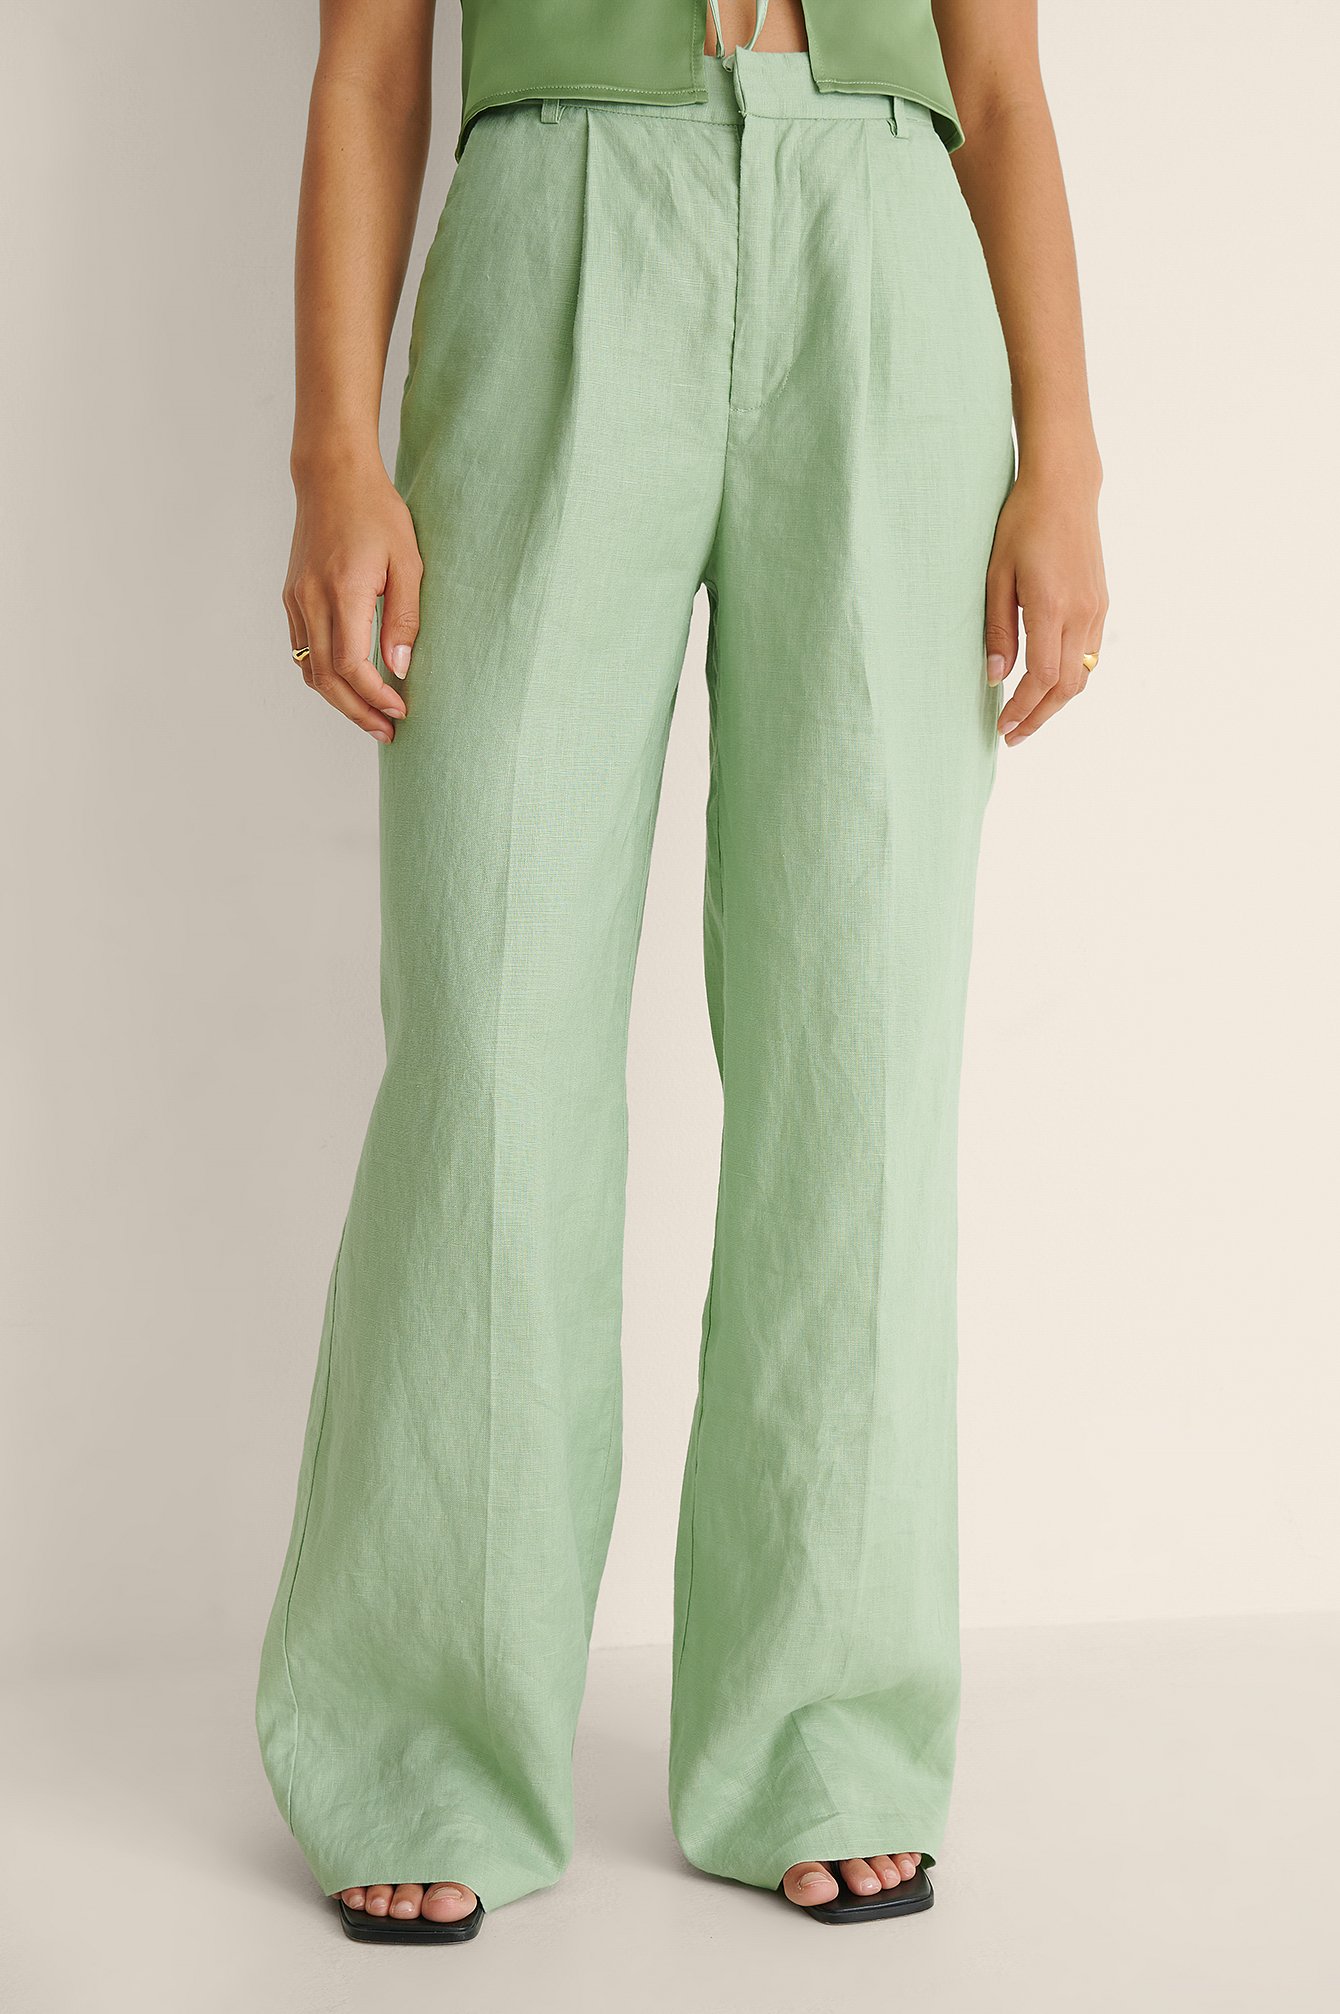 Green Pantaloni Lunghi Eleganti In Lino